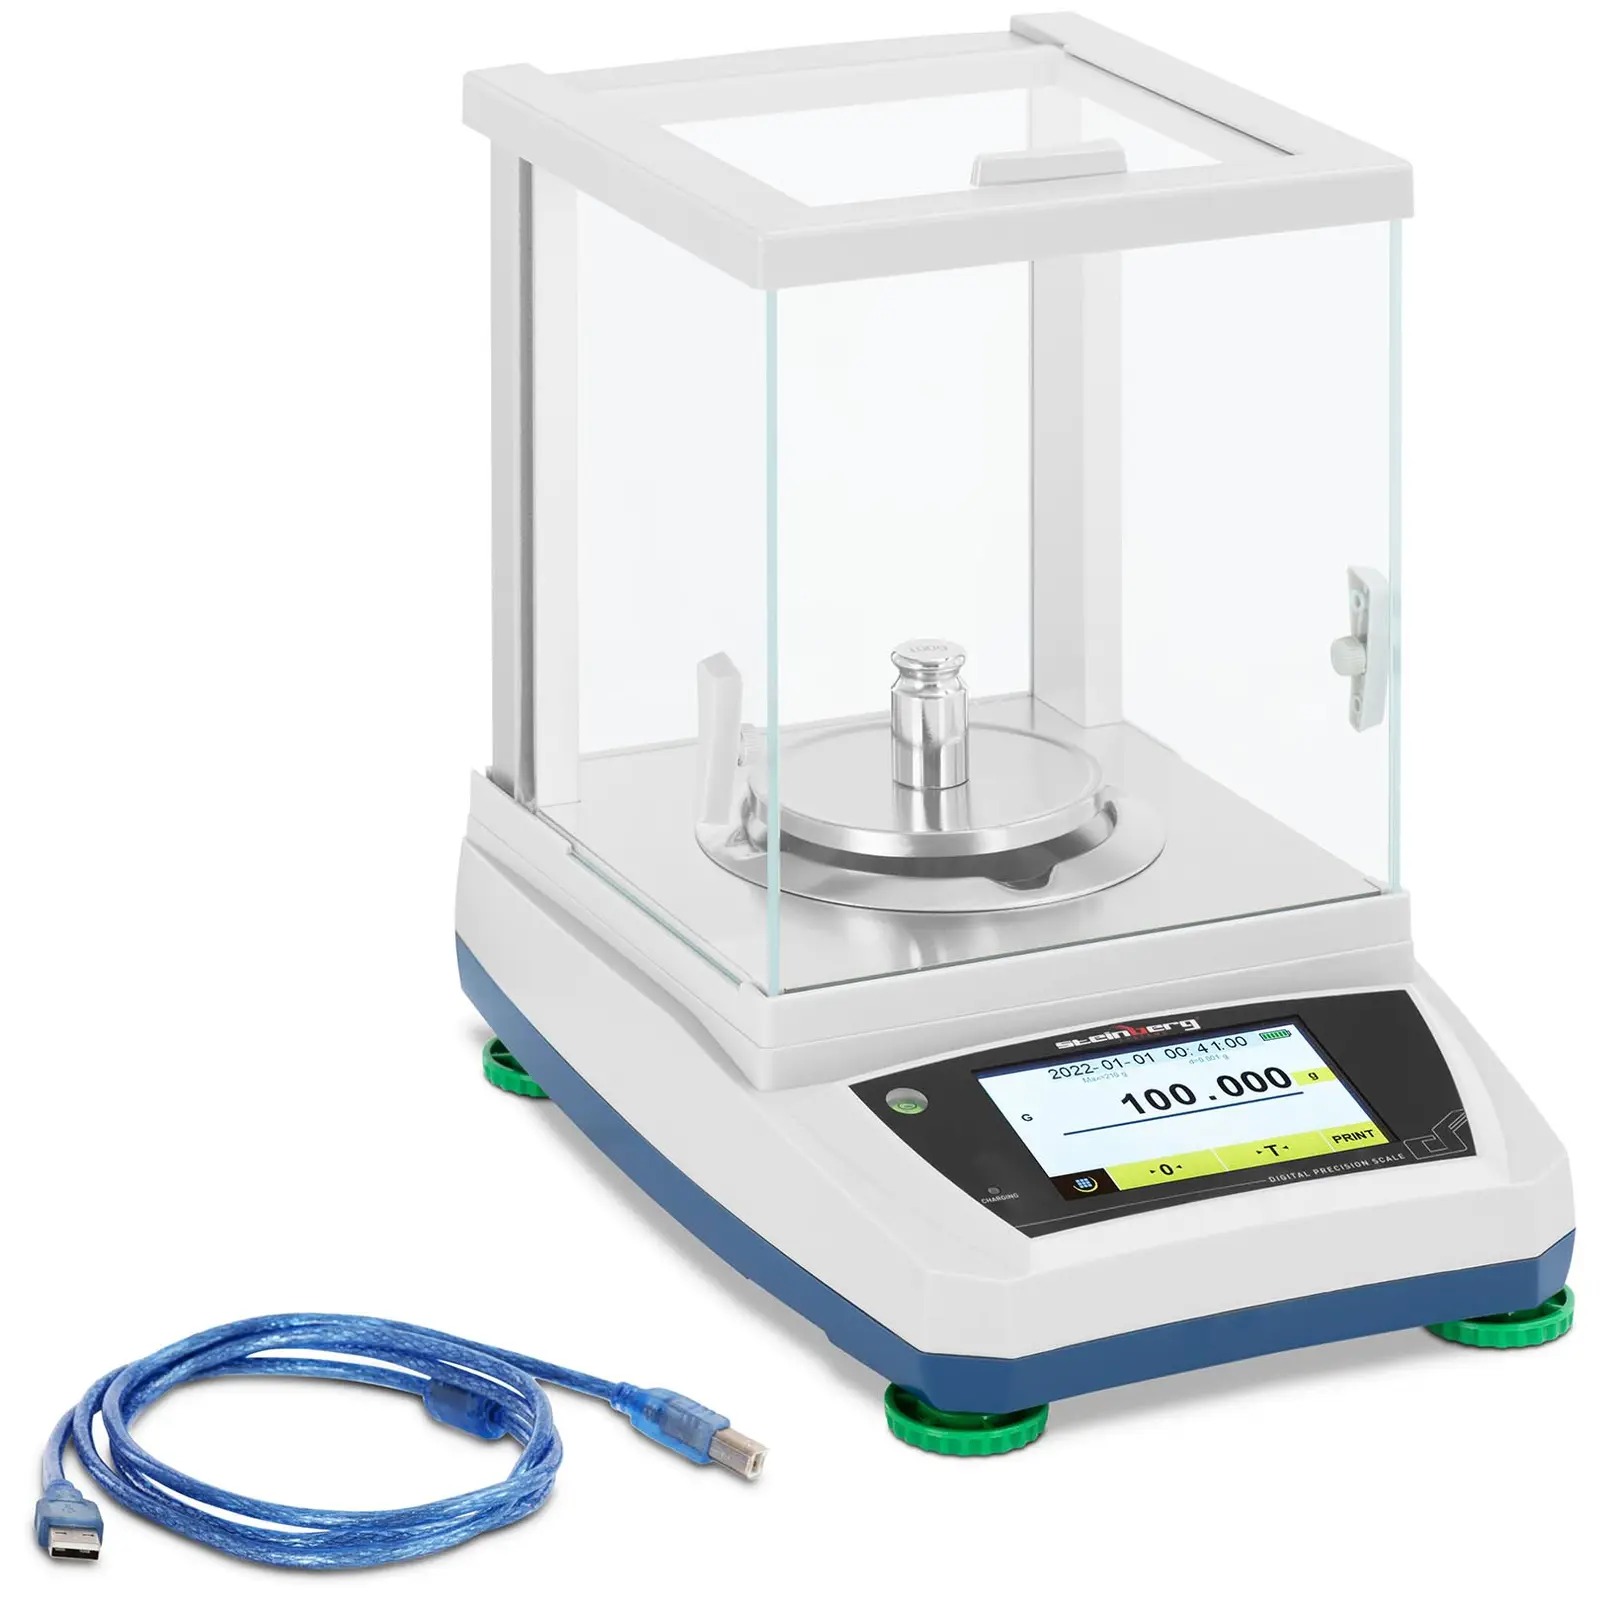 Balança de laboratório - 200 g / 0,001 g - Ø98 mm - painel táctil LCD - bateria recarregável - cobertura de vidro contra fatores externos